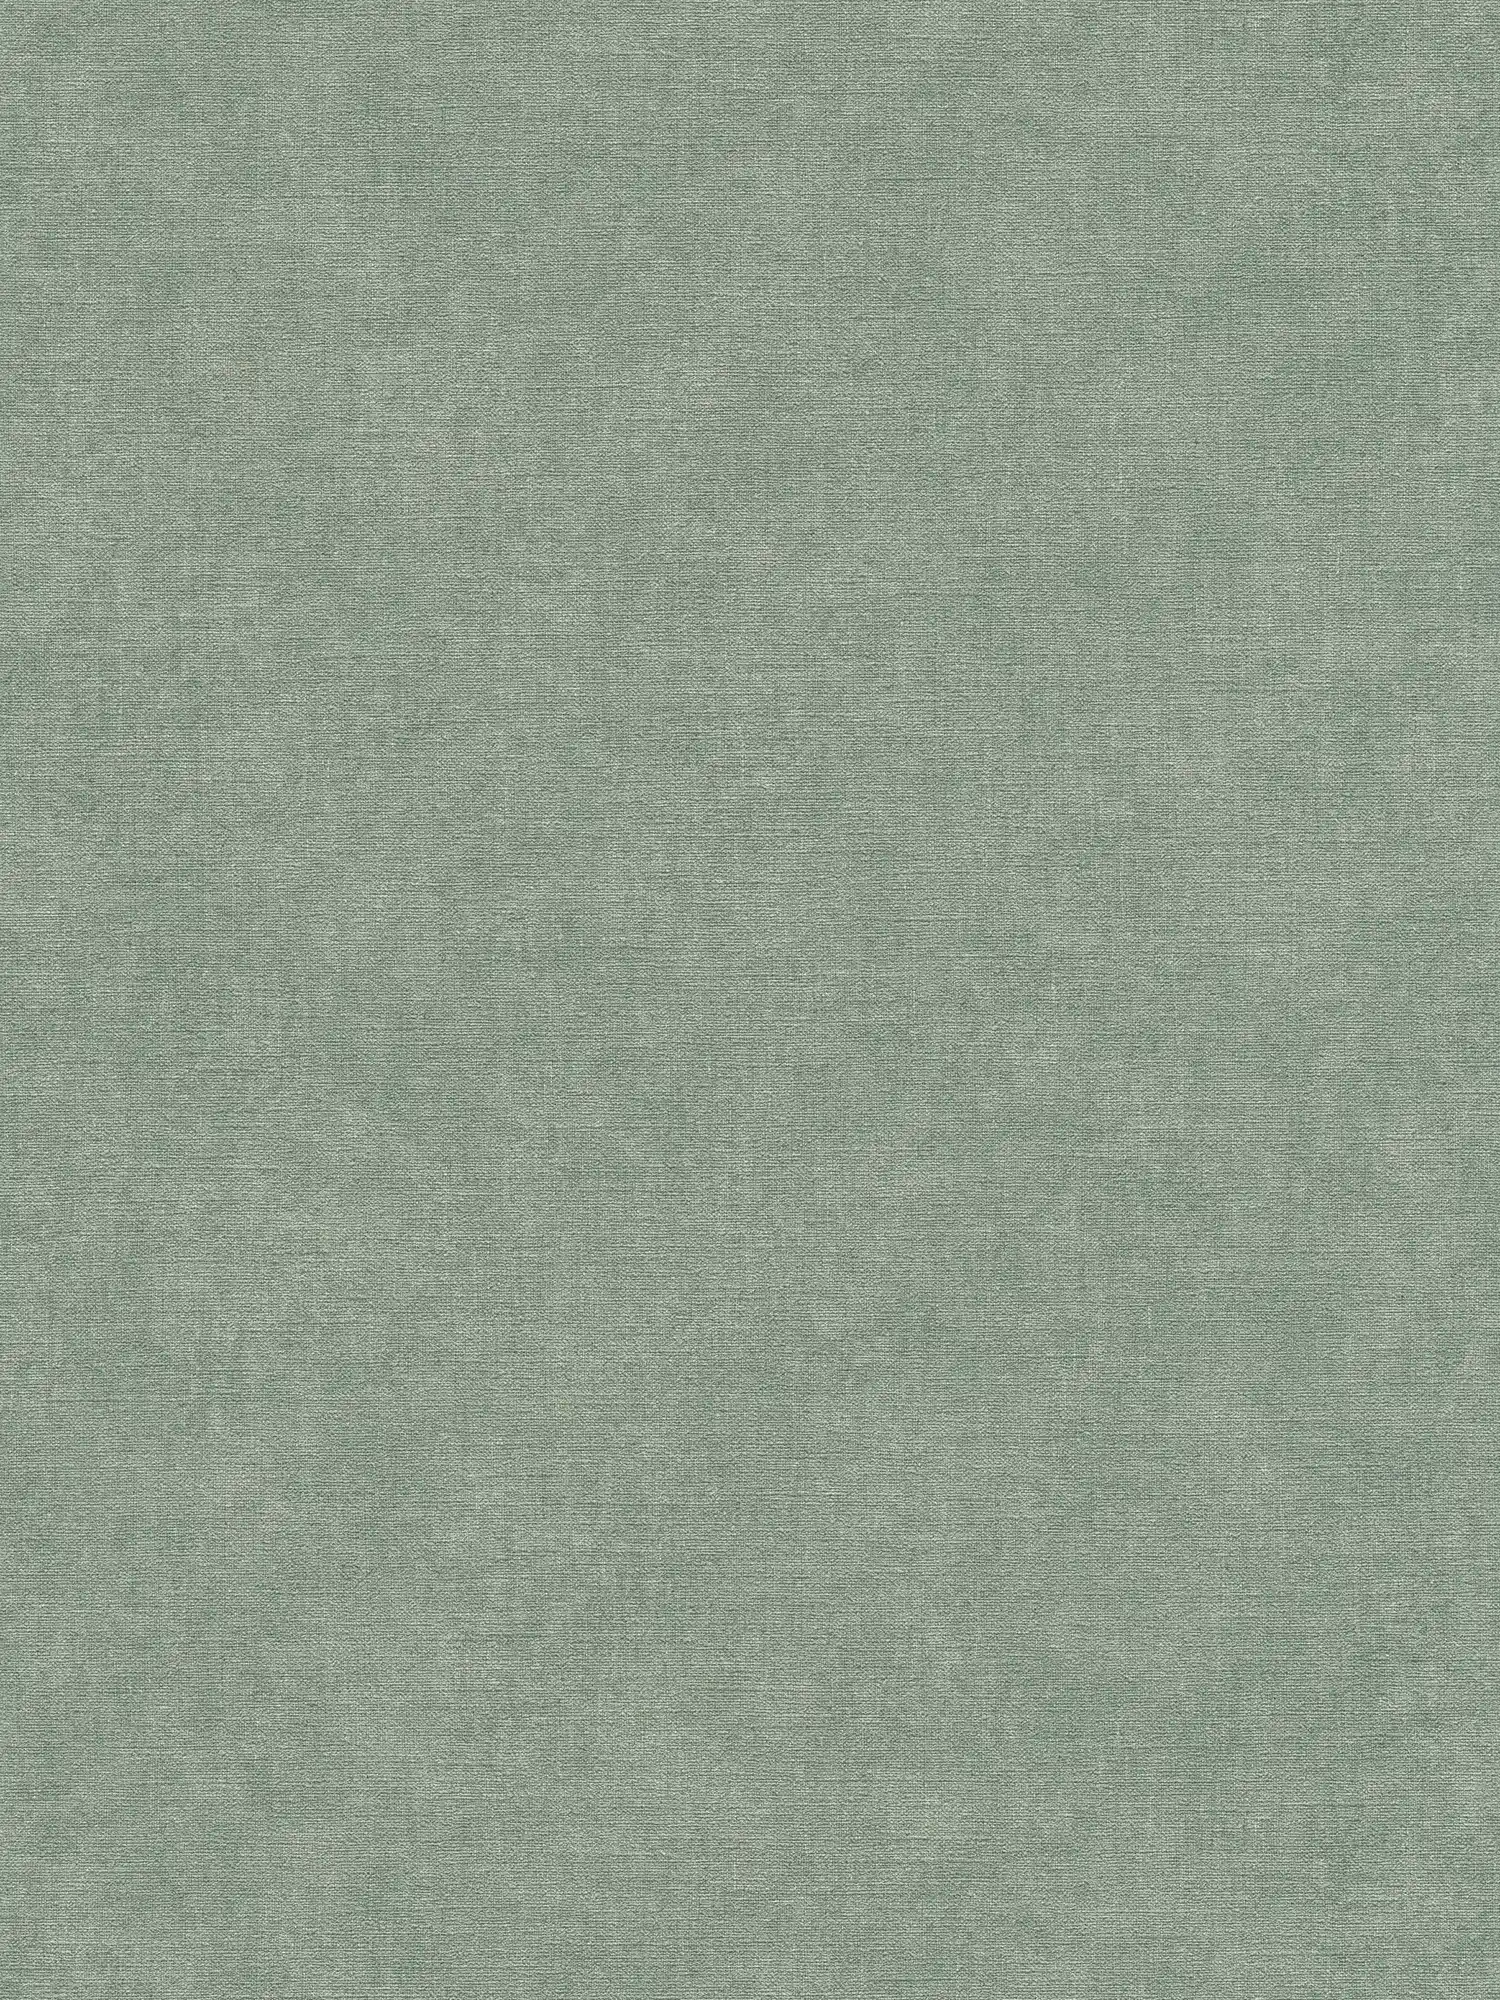 Carta da parati a tessitura leggera in look tessile - verde, grigio
